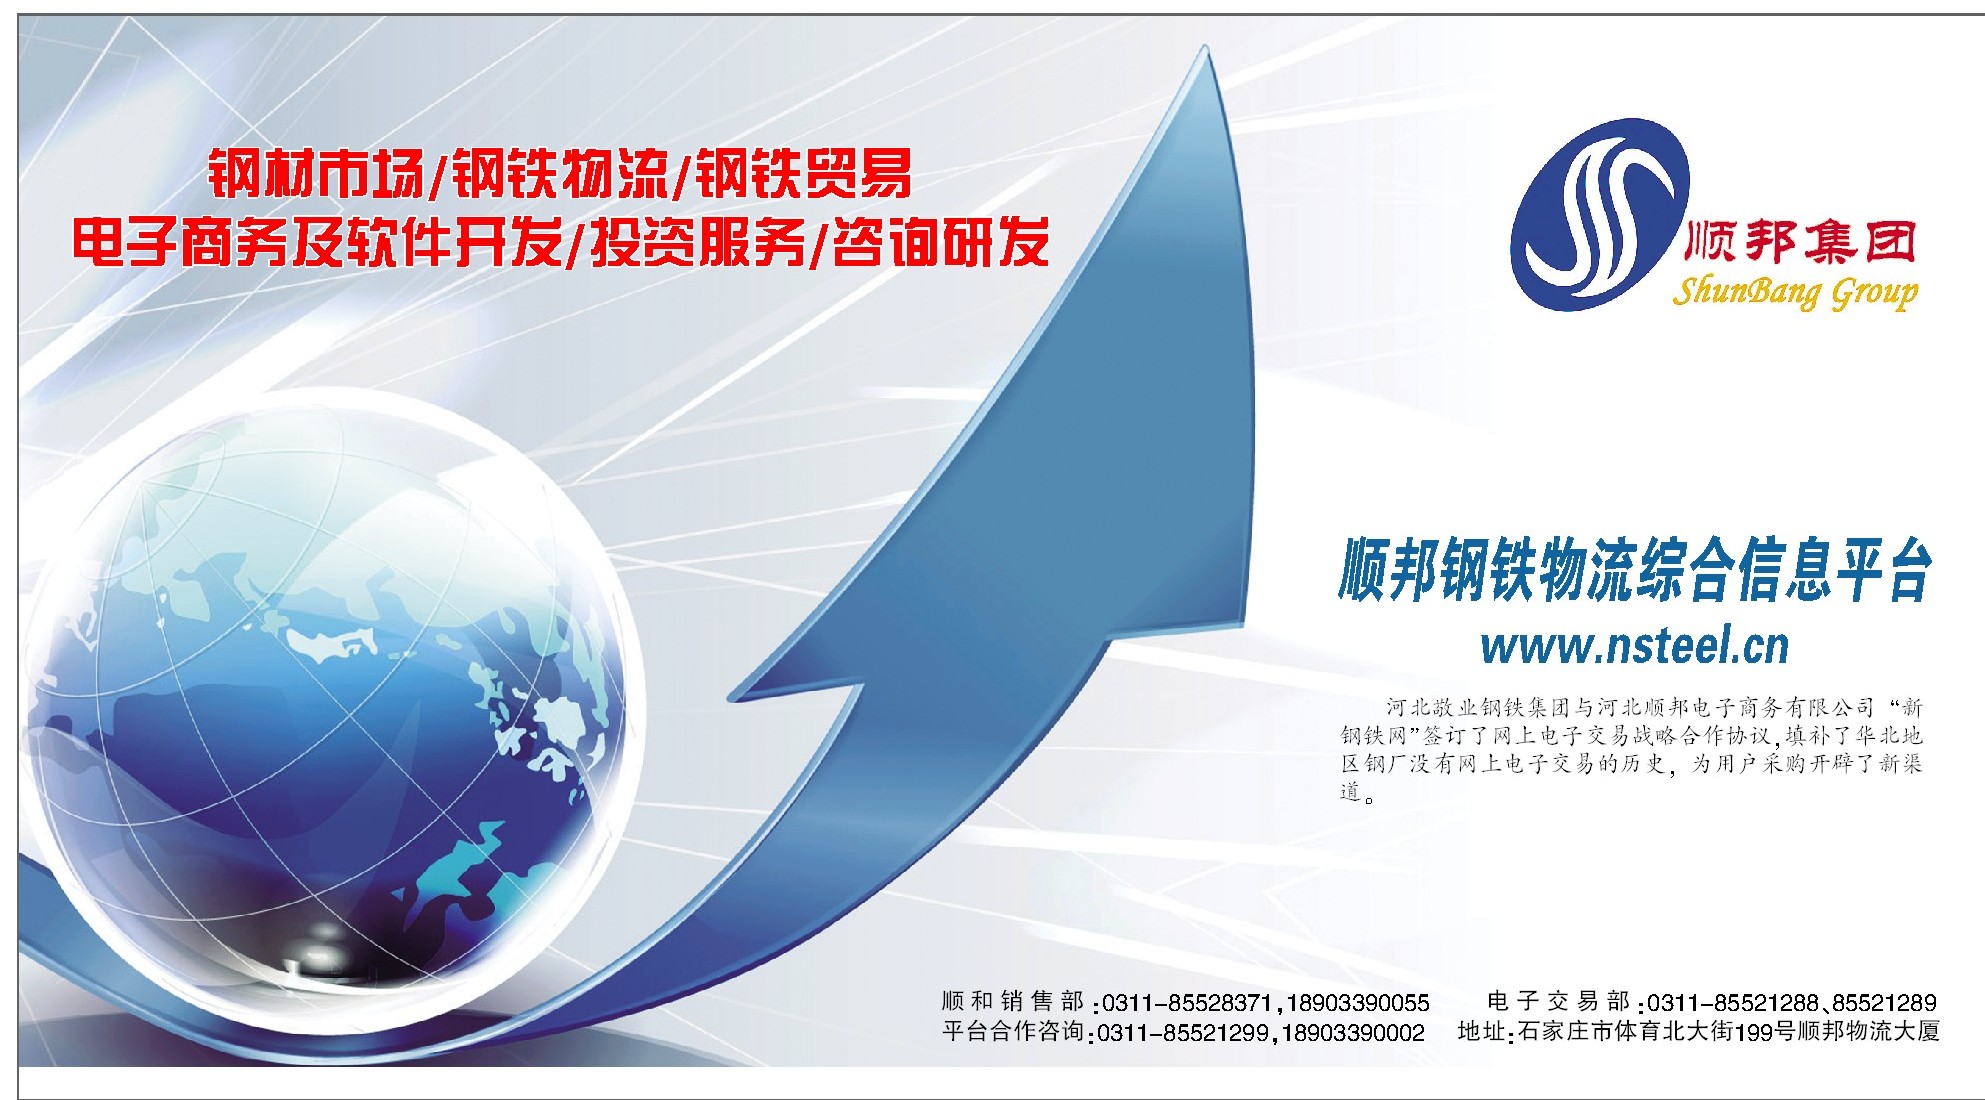 顺邦钢铁物流综合信息平台 第8版:业界 20100